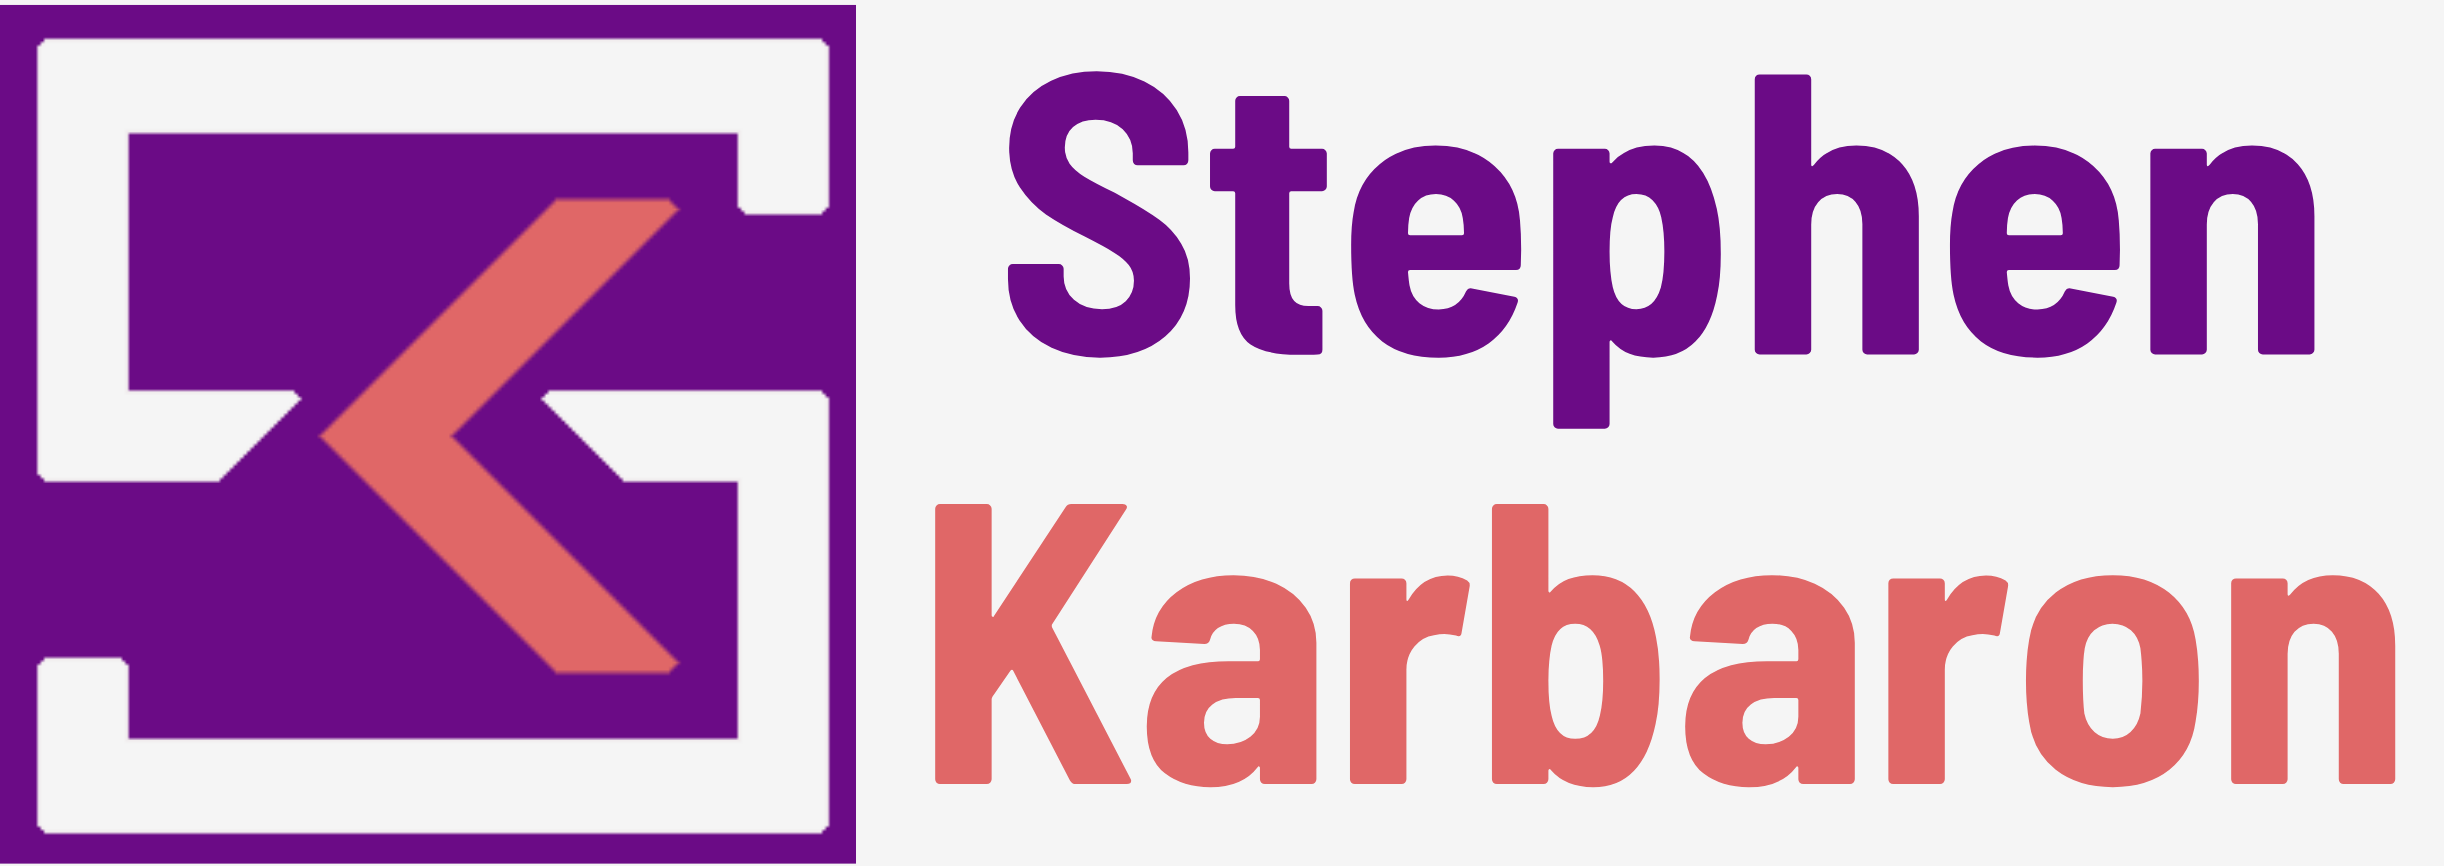 Stephen Karbaron logo